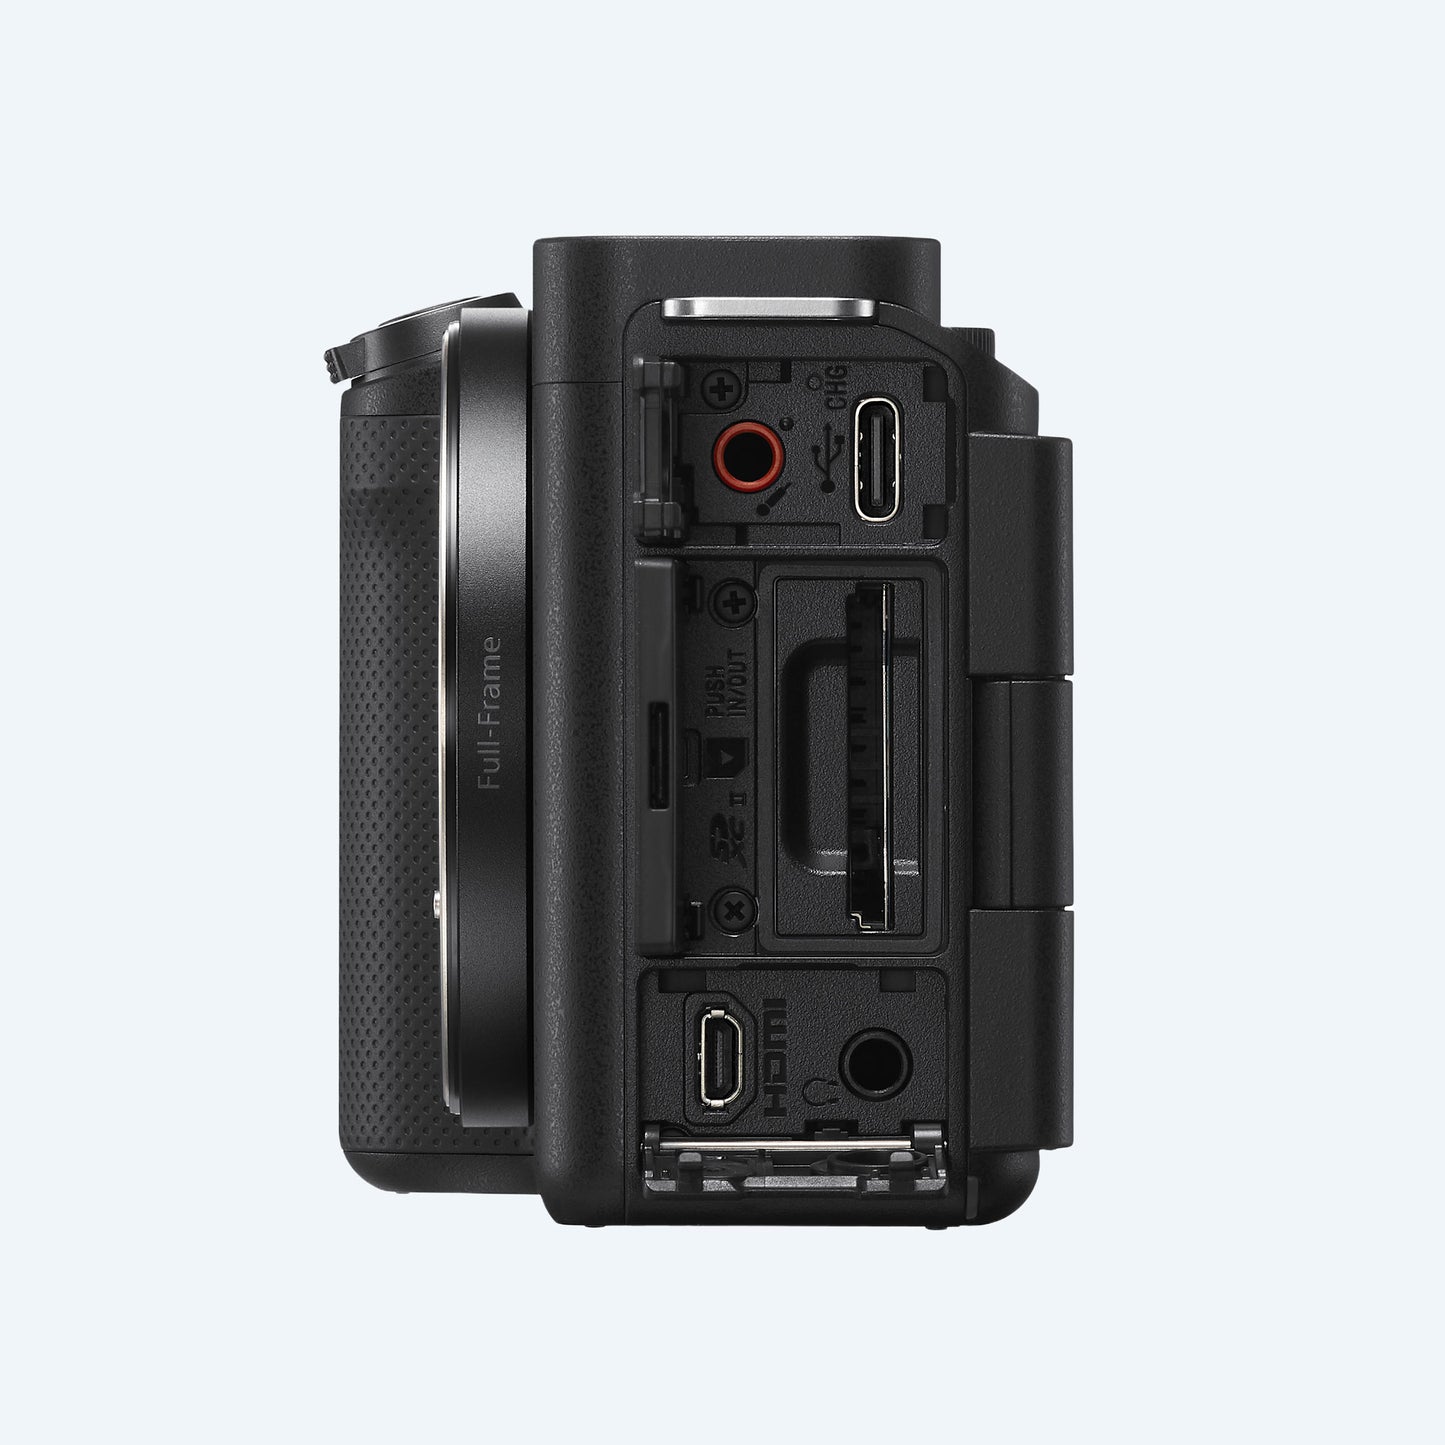 Sony ZV-E1 Full-Frame Interchangeable Lens Vlog Camera